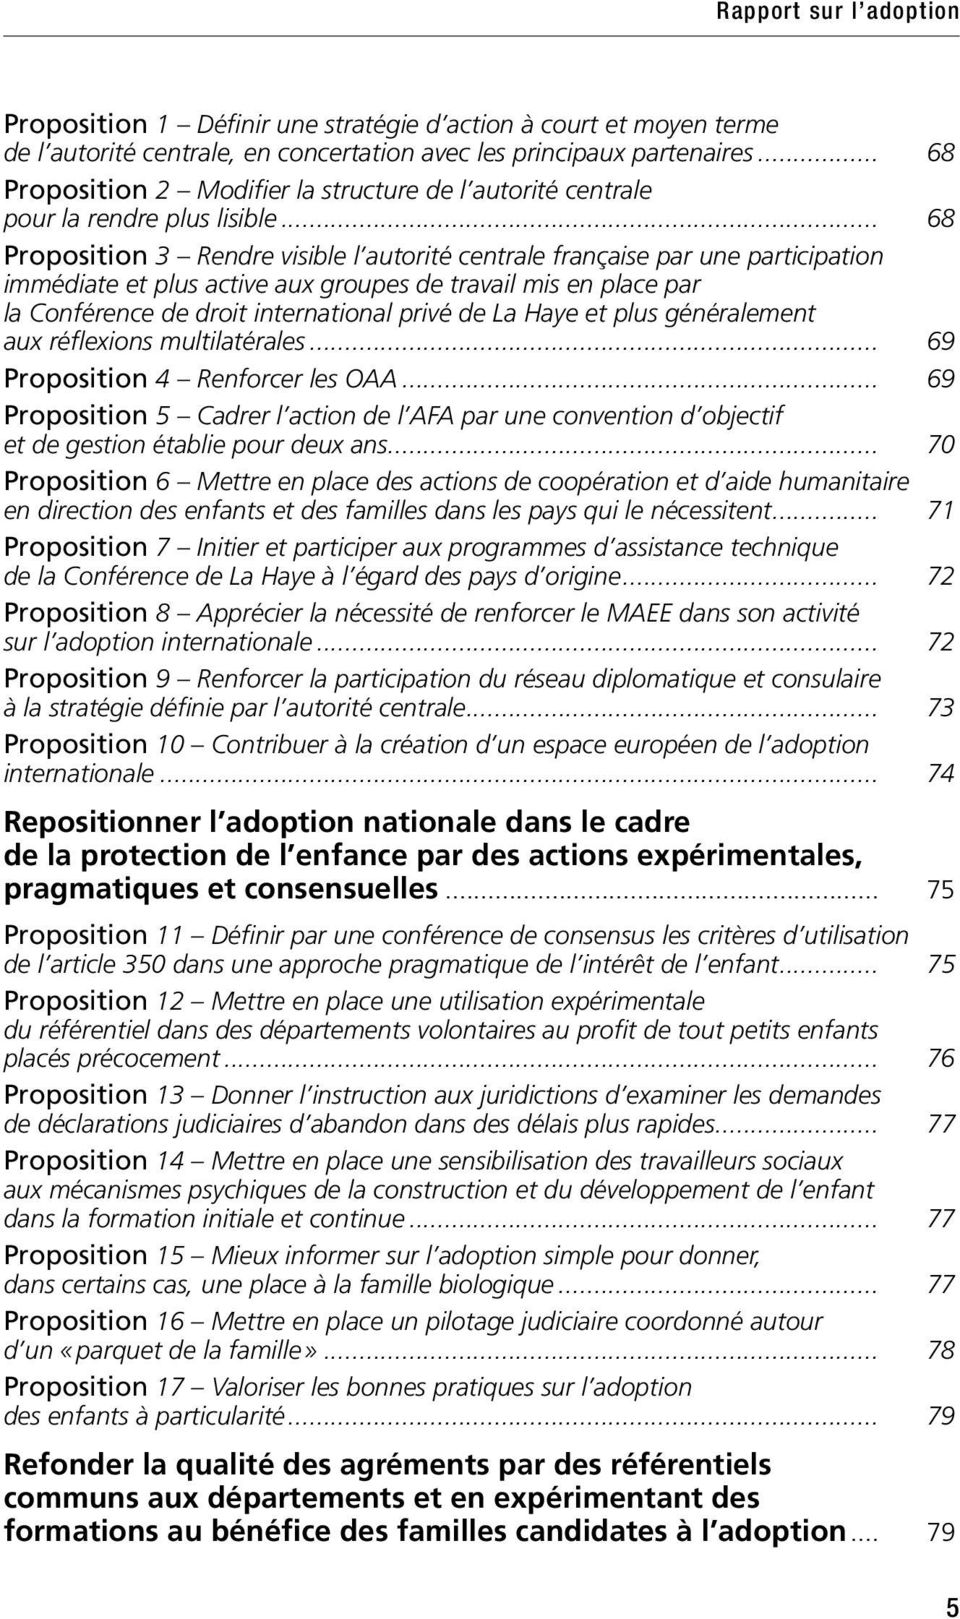 .. 68 Proposition 3 Rendre visible l autorité centrale française par une participation immédiate et plus active aux groupes de travail mis en place par la Conférence de droit international privé de